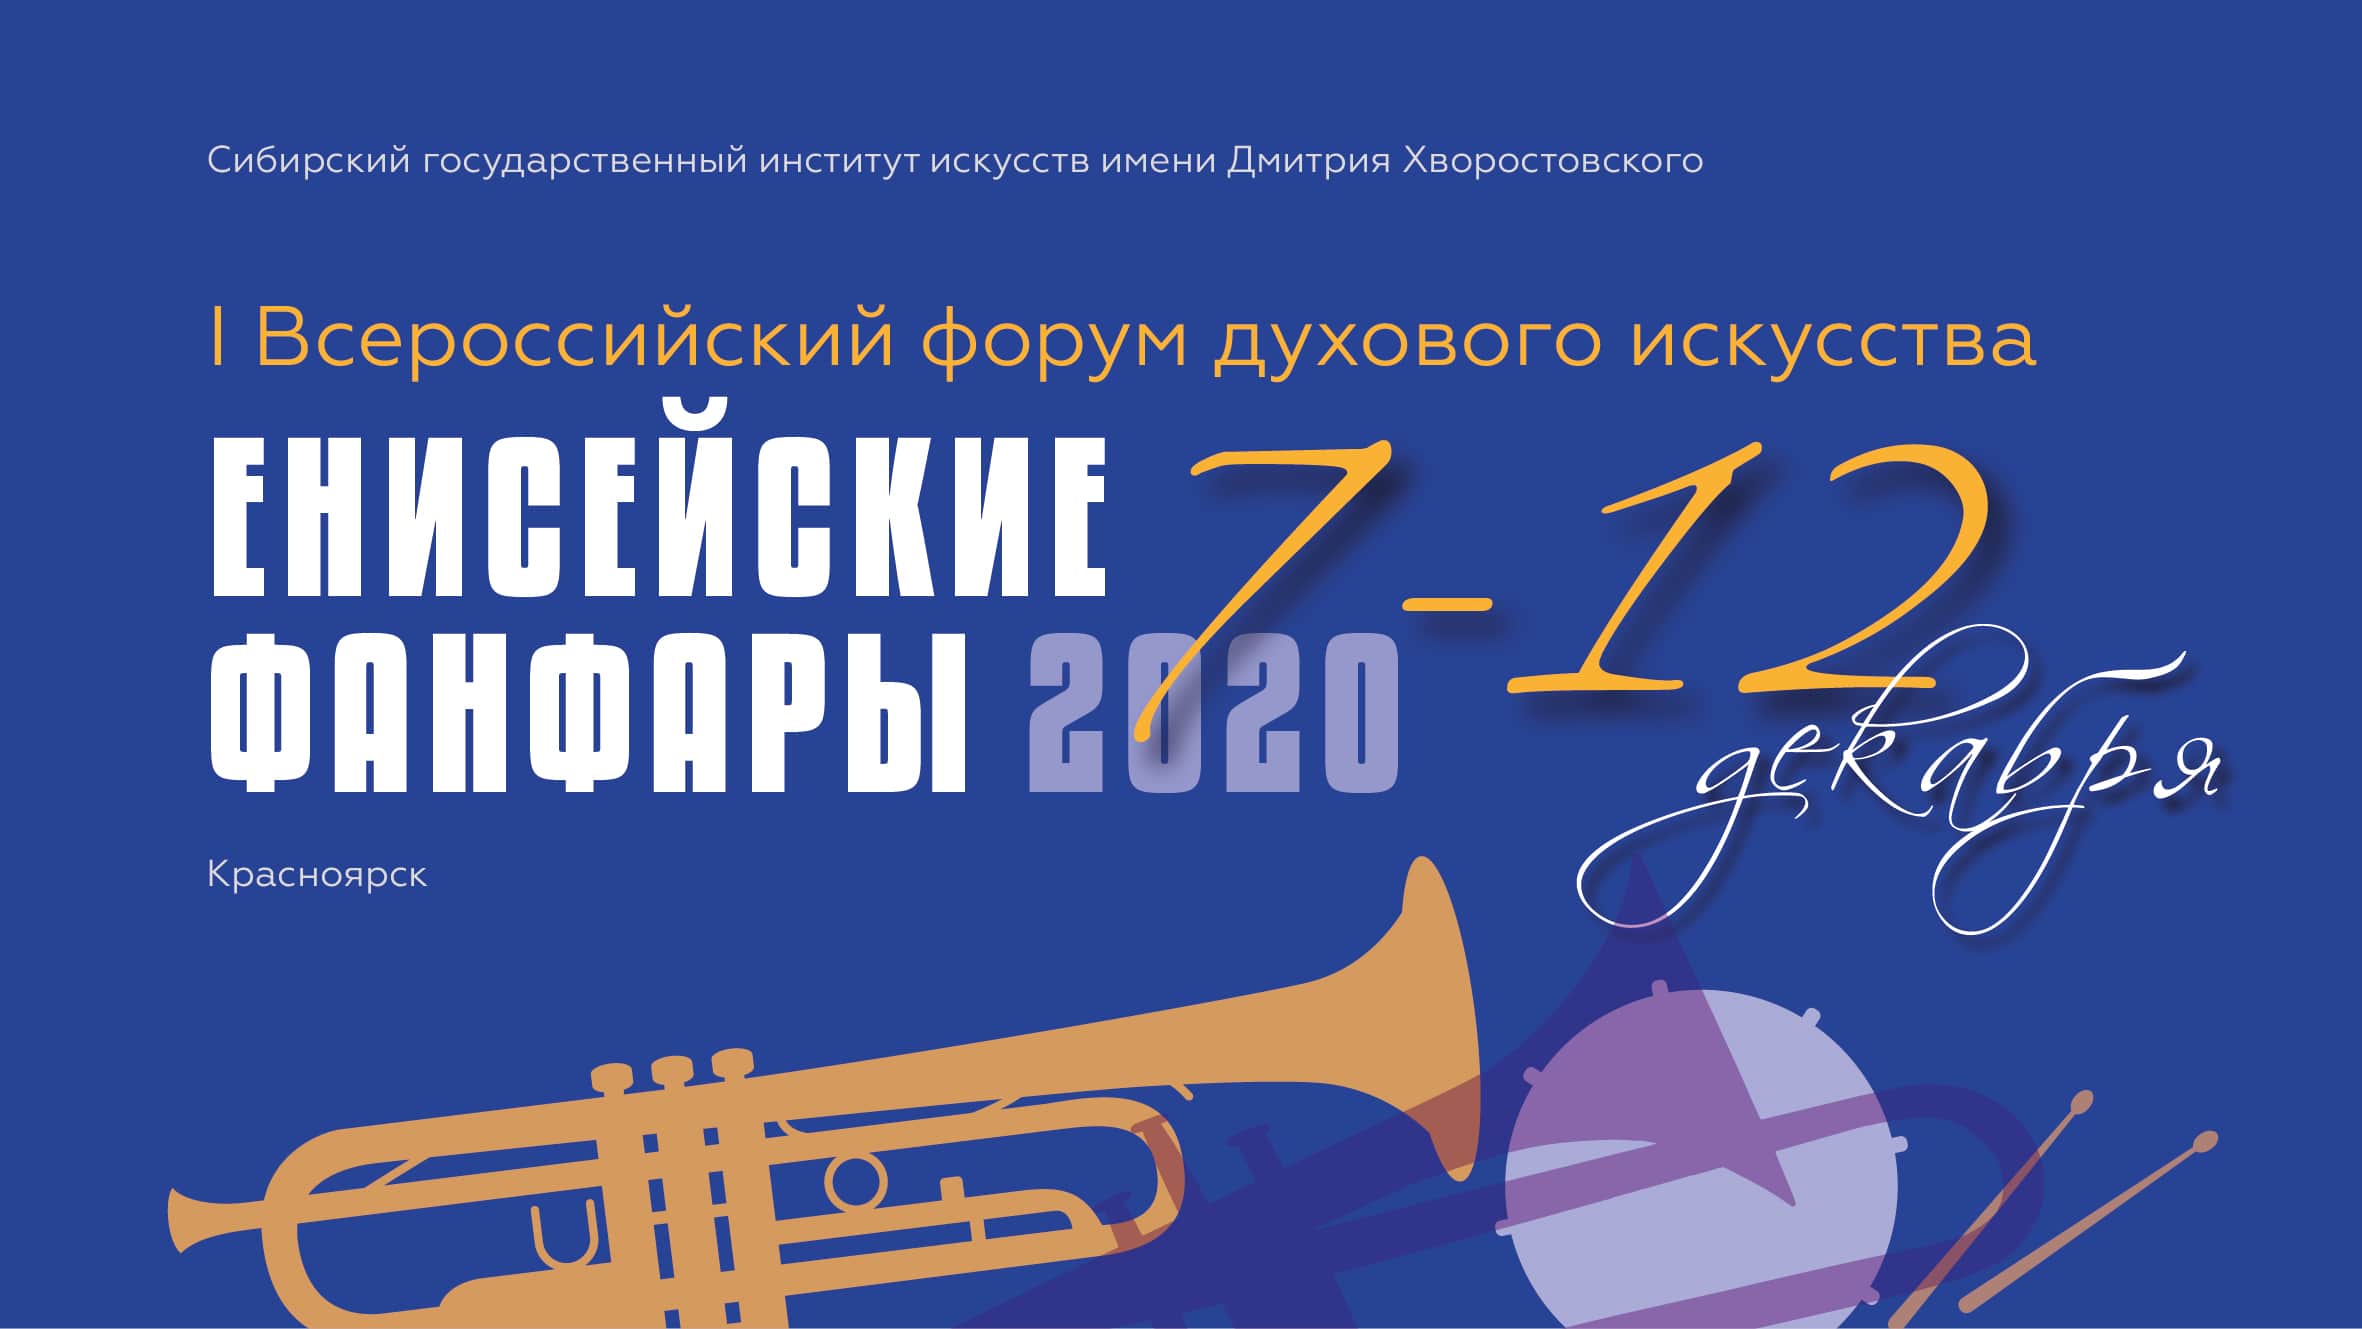 7 – 12 декабря 2020 СГИИ имени Д. Хворостовского проведёт I Всероссийский форум духового искусства «Енисейские фанфары – 2020»